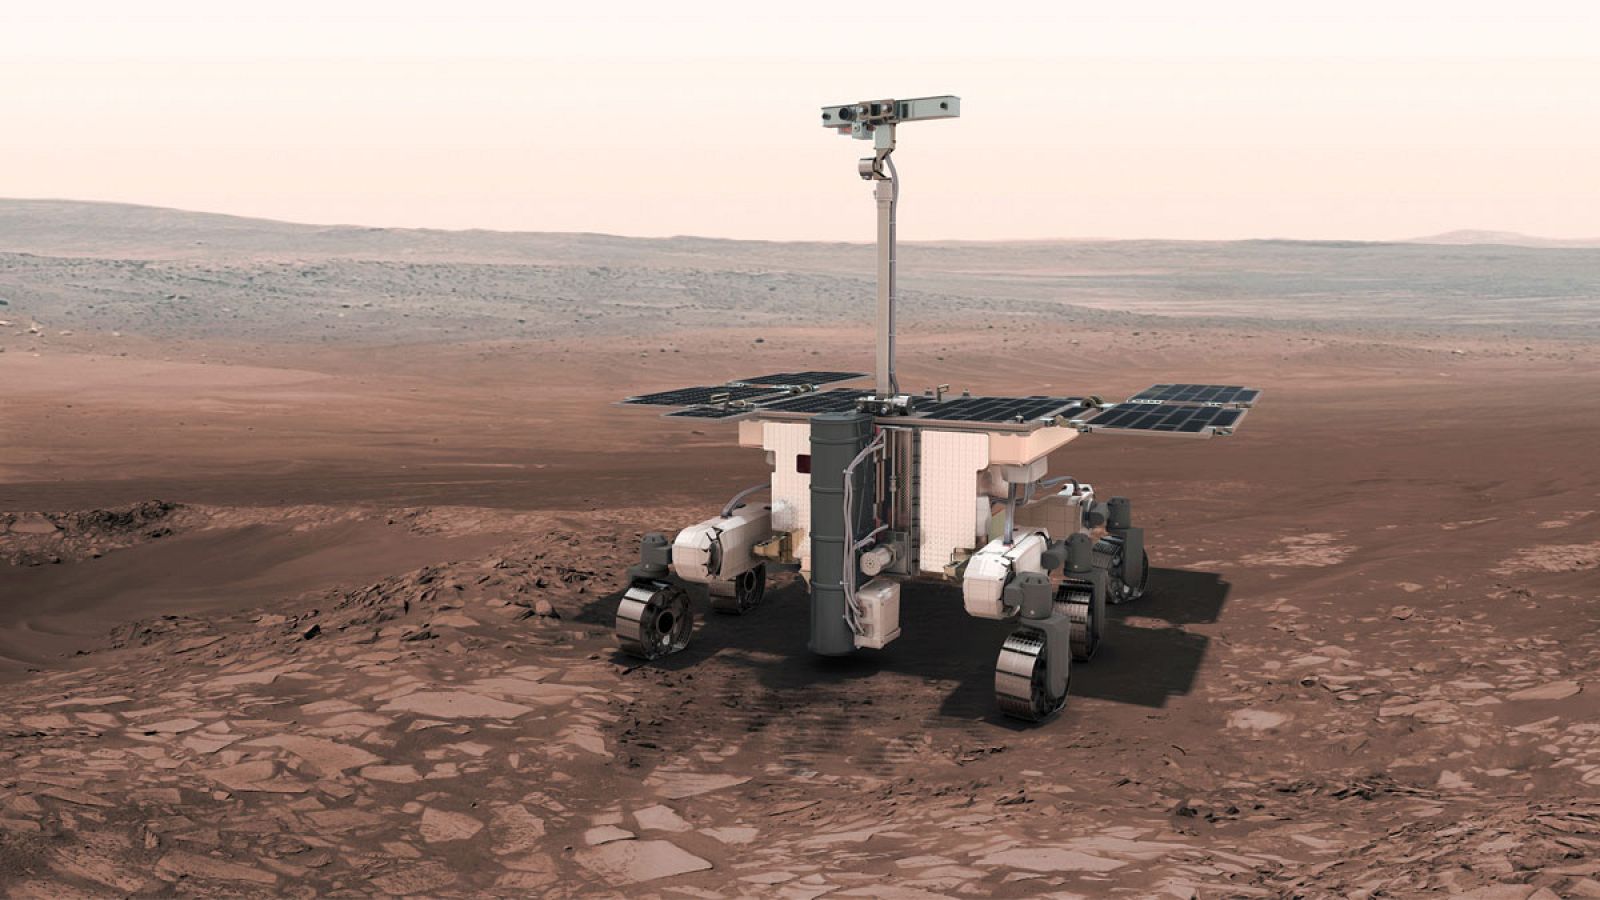 El róver pesa 300 kilogramos y tiene una autonomía de 218 días marcianos.